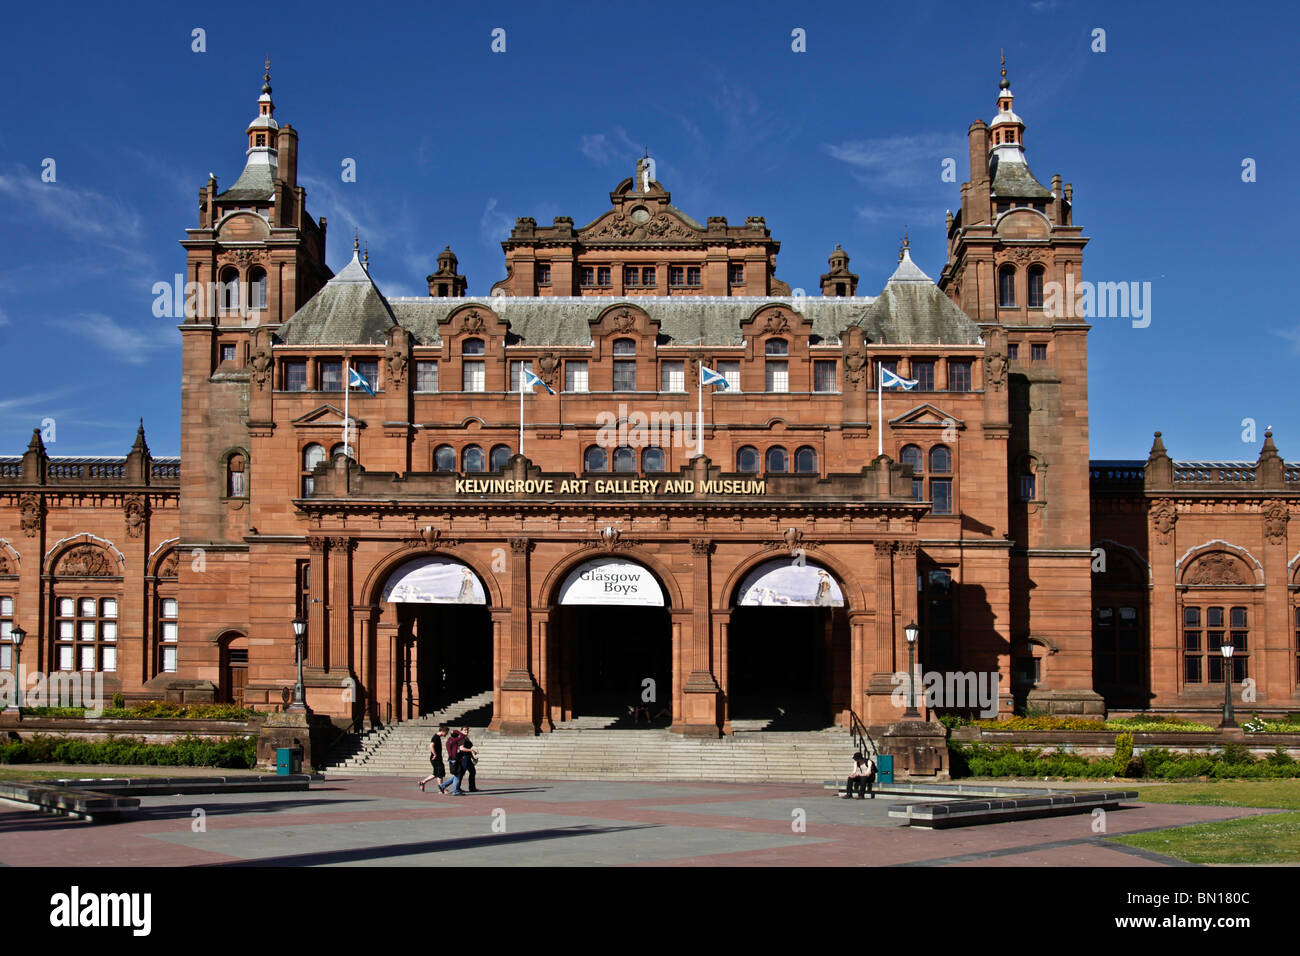 Entrée de Kelvingrove Art Gallery and Museum, Glasgow';s'emblématique édifice de grès rouge, construite dans le style baroque espagnol. Banque D'Images